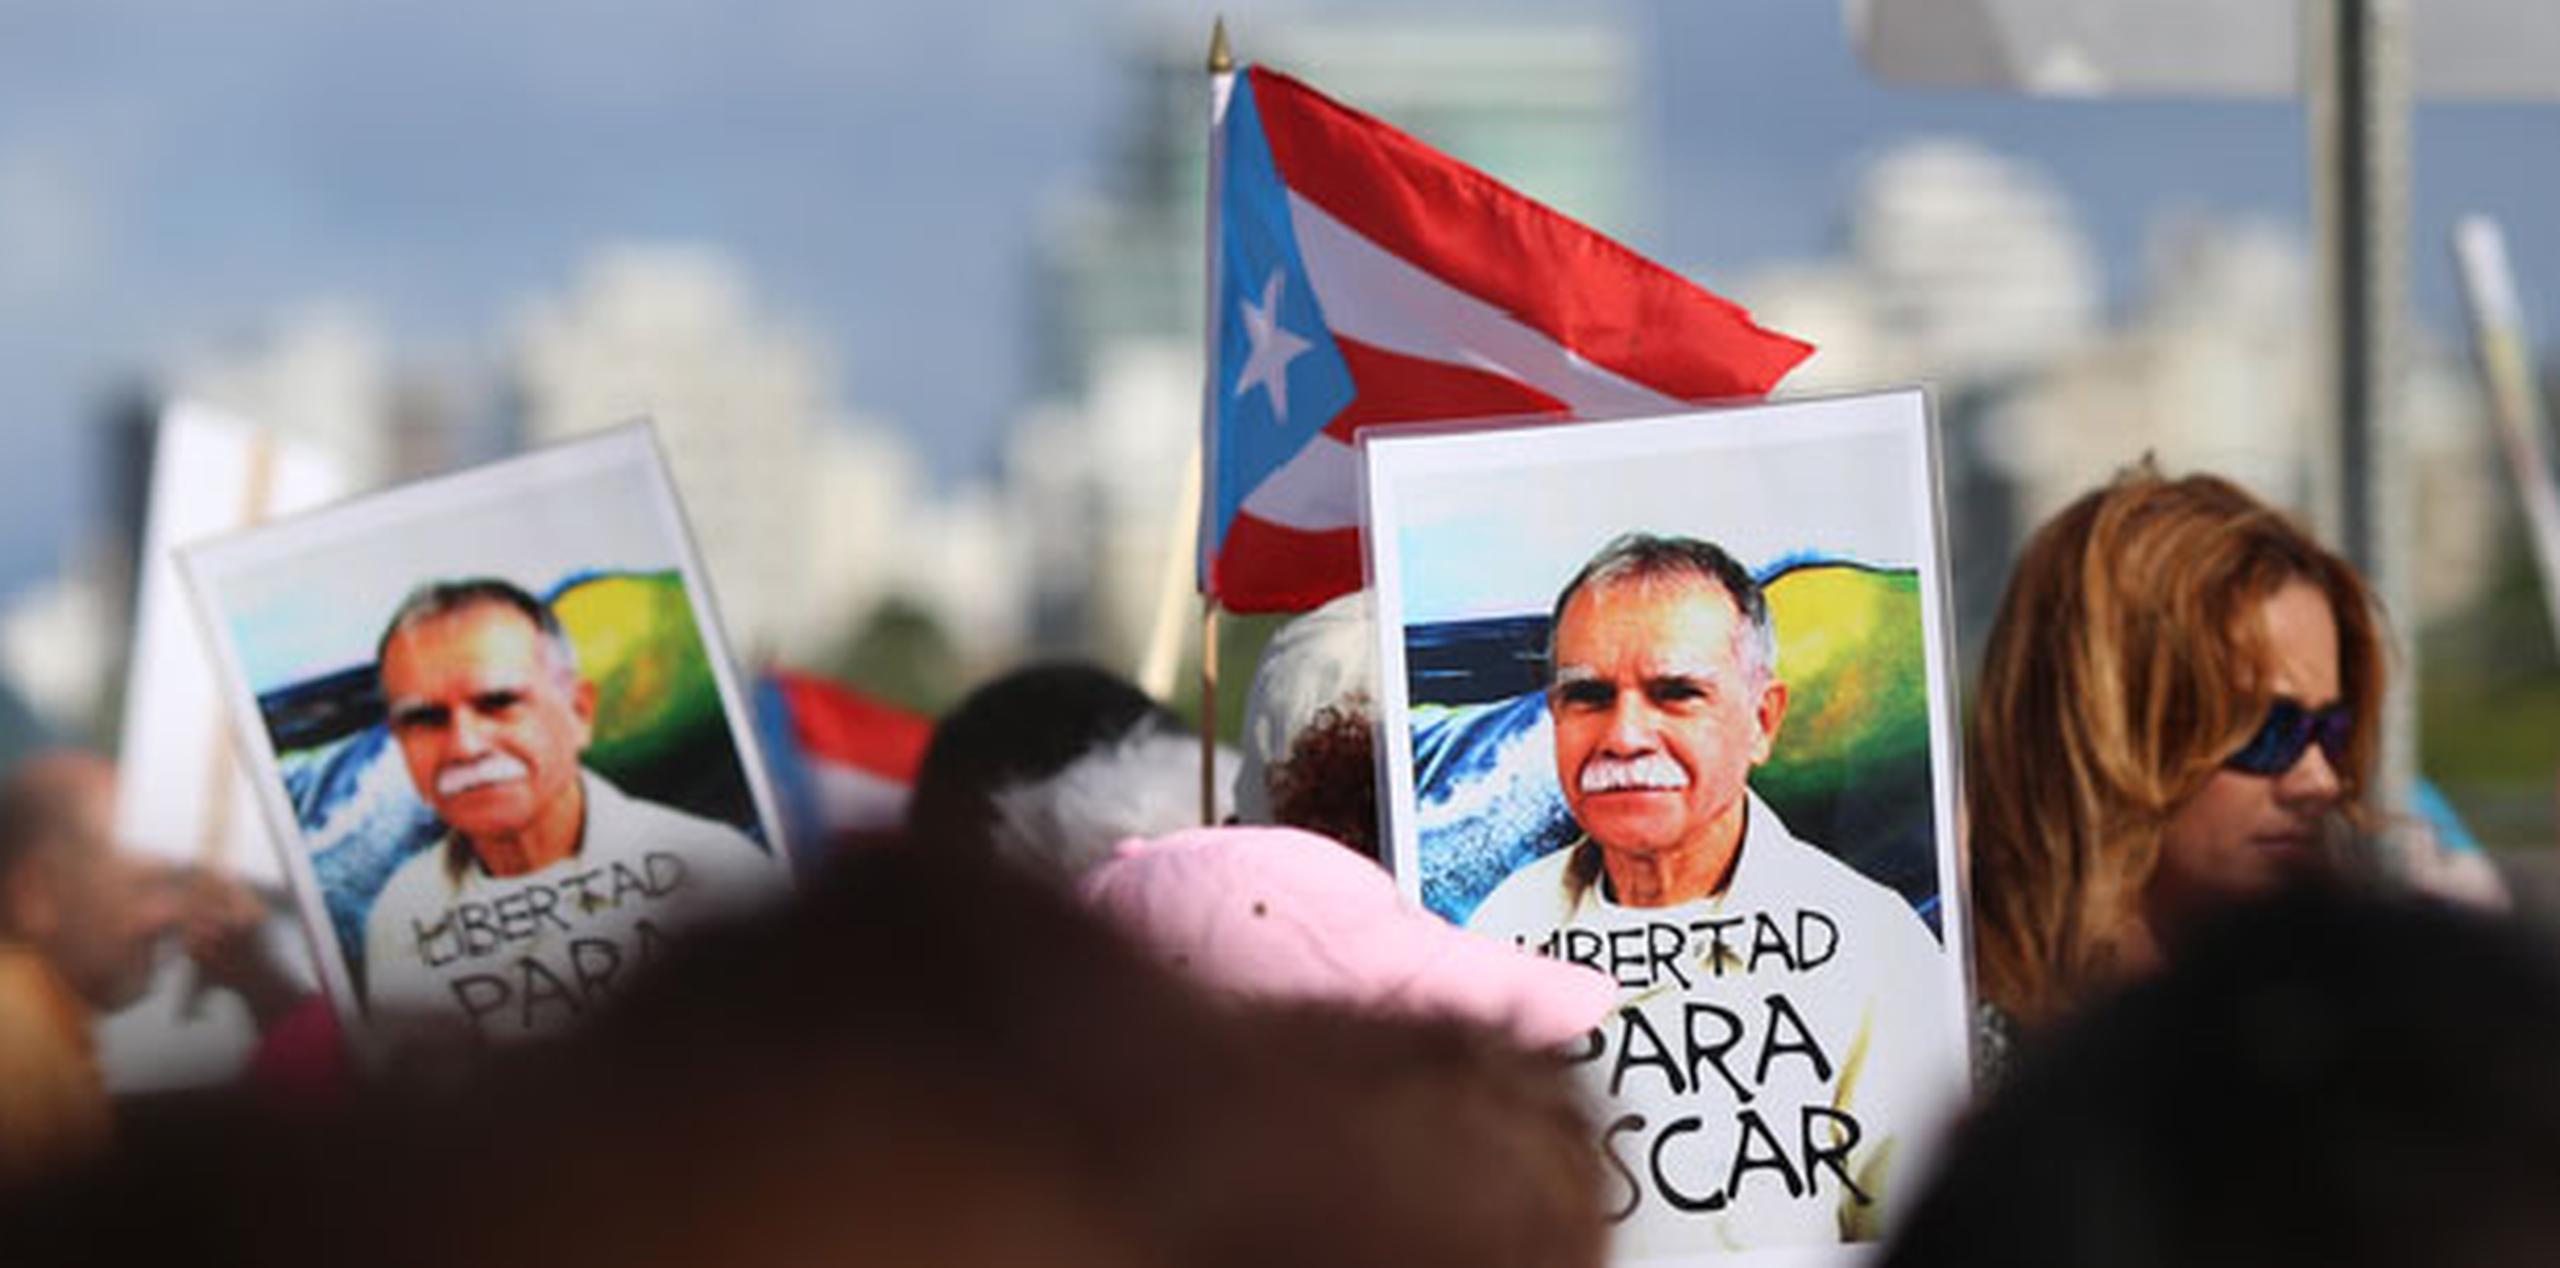 De los 33 años que Oscar López Rivera lleva en prisión, ha estado 13 en confinamiento solitario, sin tener ningún tipo de contacto con su familia. (angel.rivera@gfrmedia.com)